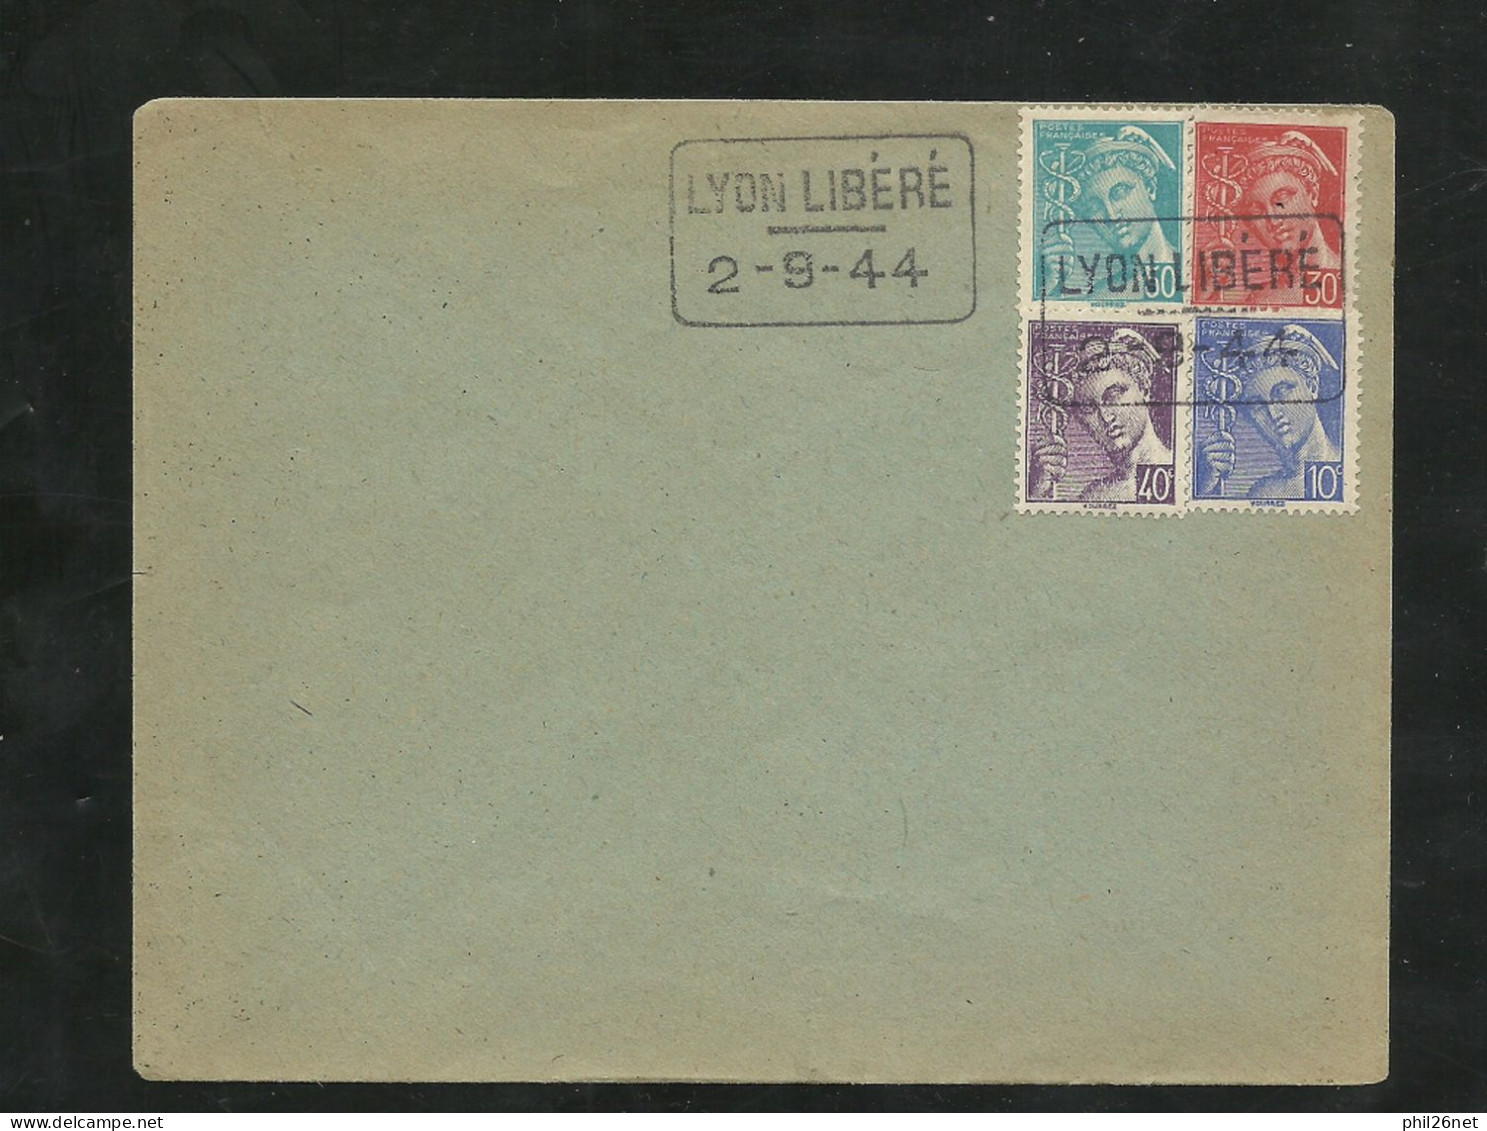 Lettre Lyon Le 2/9/1944 Cachets 1er Jour De La Libération De Lyon" Lyon Libéré" 2-9-44 Avec Les N° 546 à 549  TB - Liberation